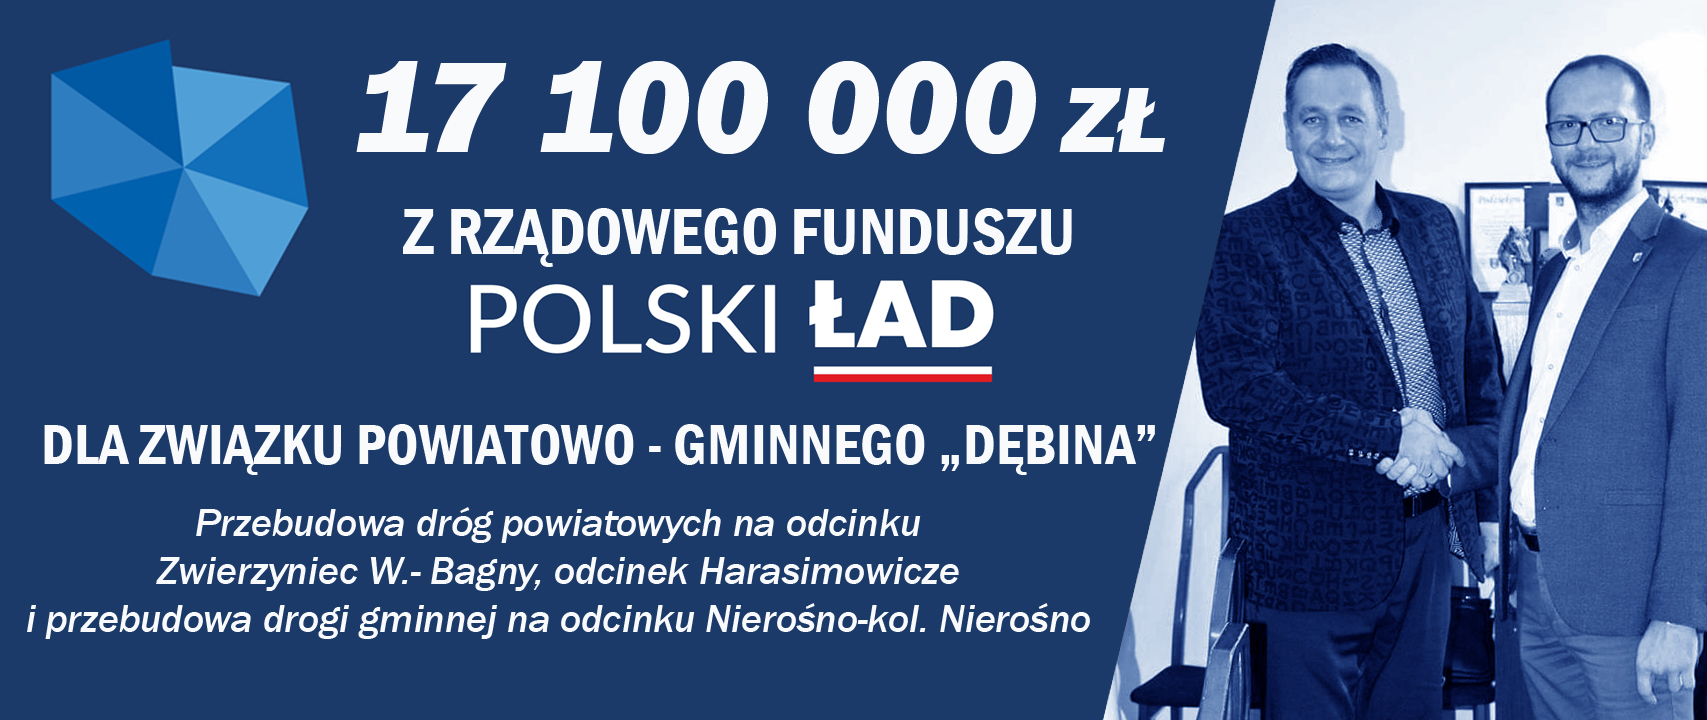 Polski Ład przeznaczył 17.100.000,00 zł na realizacje przebudowy dróg Związkowi Powiatowo-Gminnemu DĘBINA, grafika mapy polski